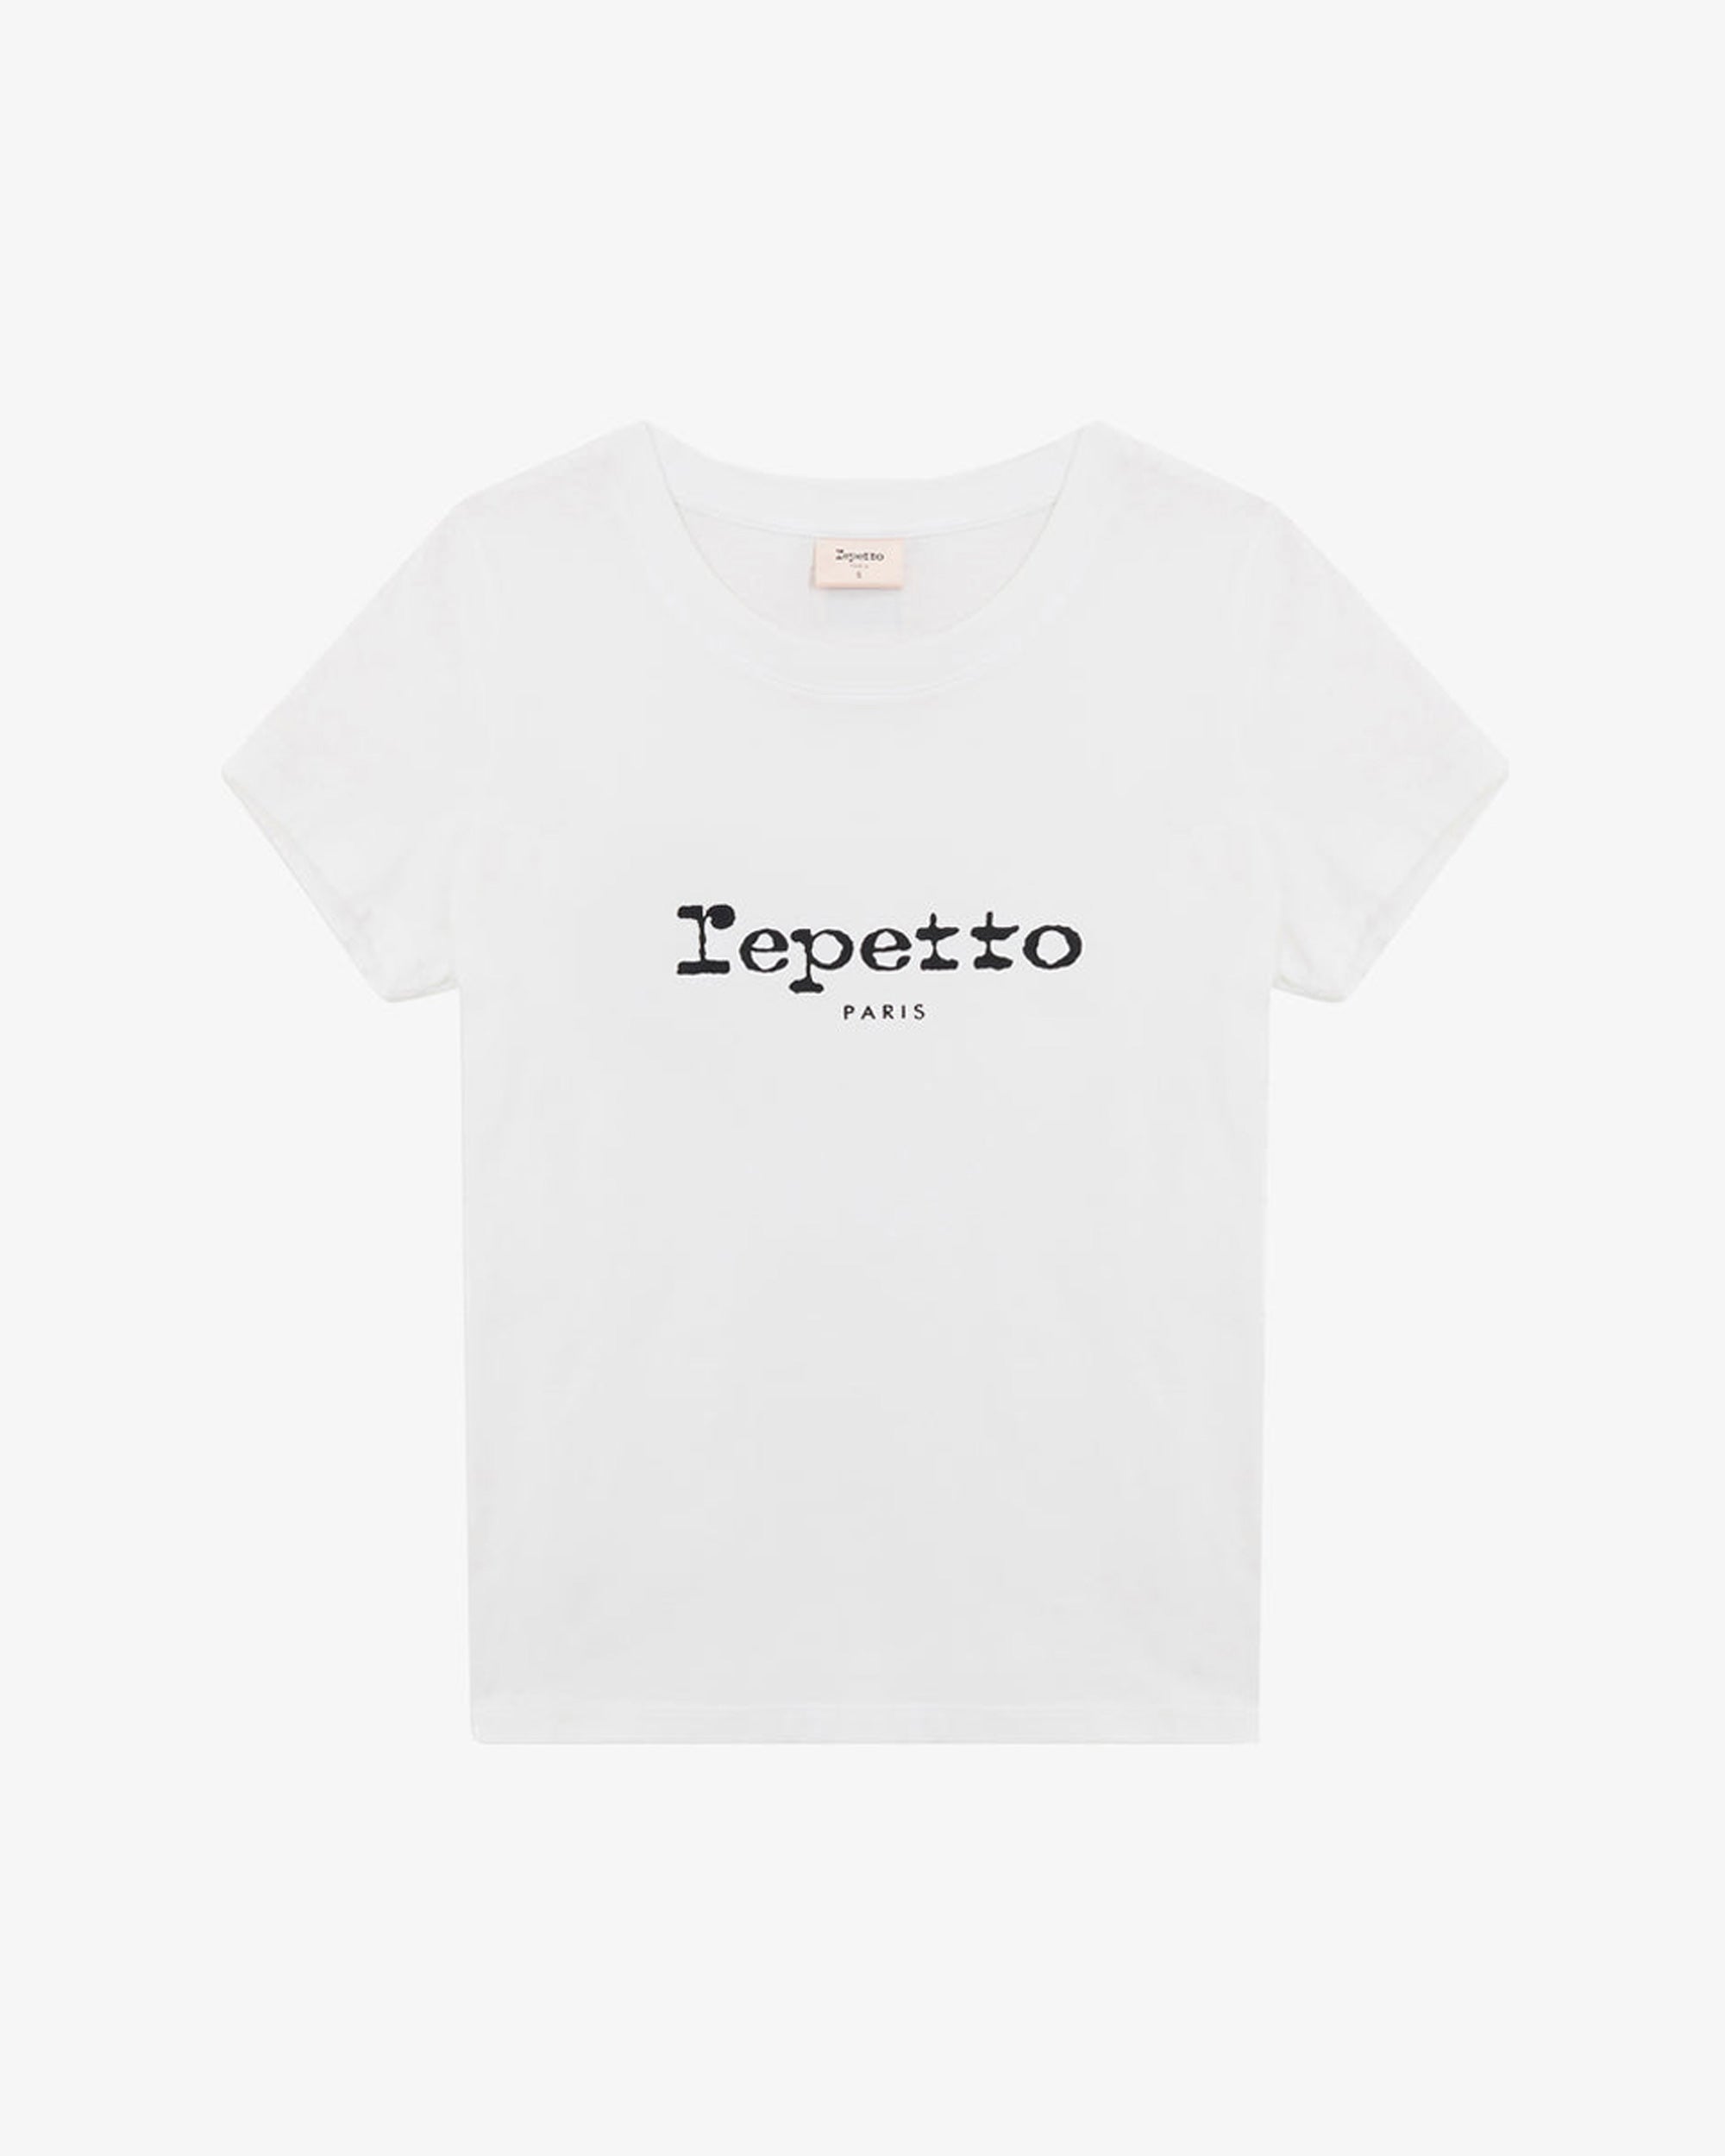 Repetto t-shirt